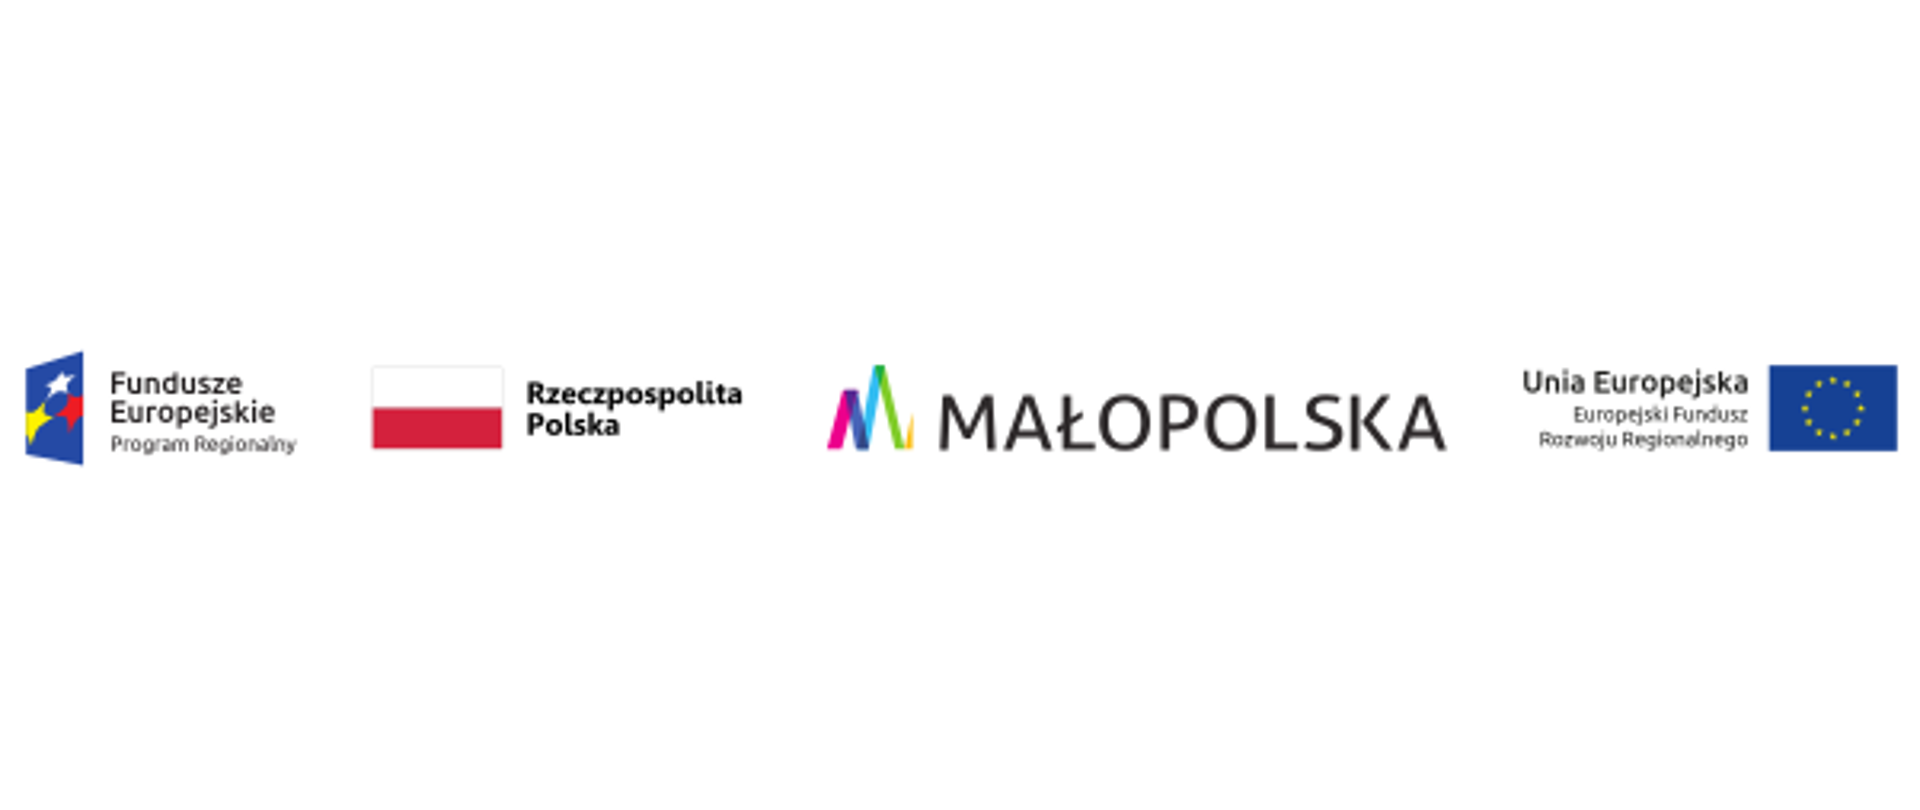 Logotypy: Fundusze Europejskie, Rzeczpospolita Polska, Małopolska, Europejski Fundusz Rozwoju Regionalnego